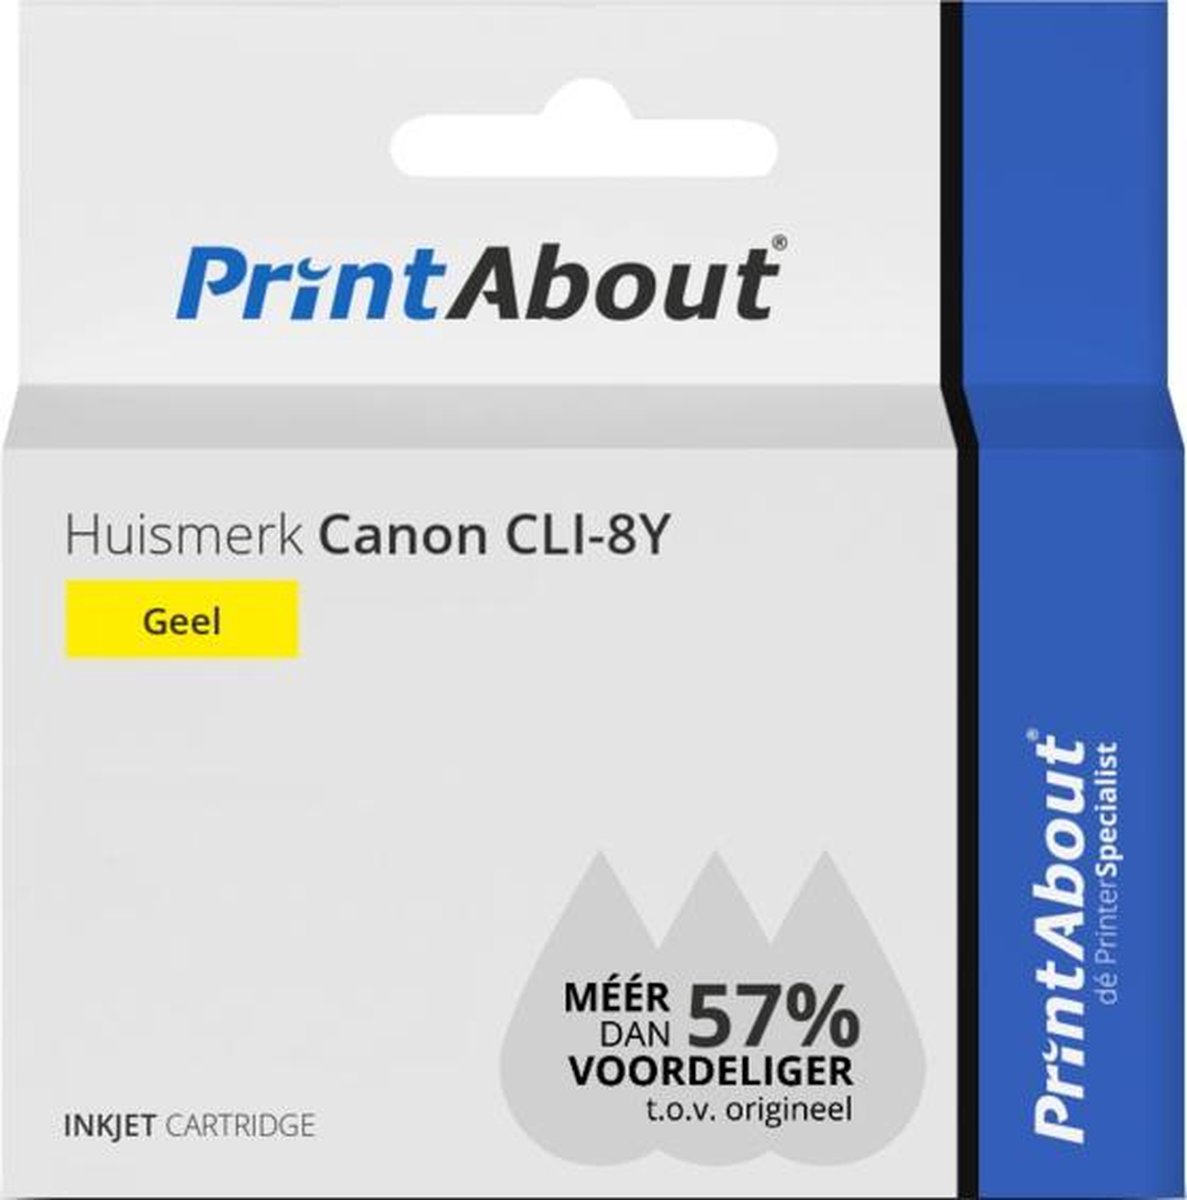 PrintAbout Huismerk Canon CLI-8Y Inktcartridge - Geel